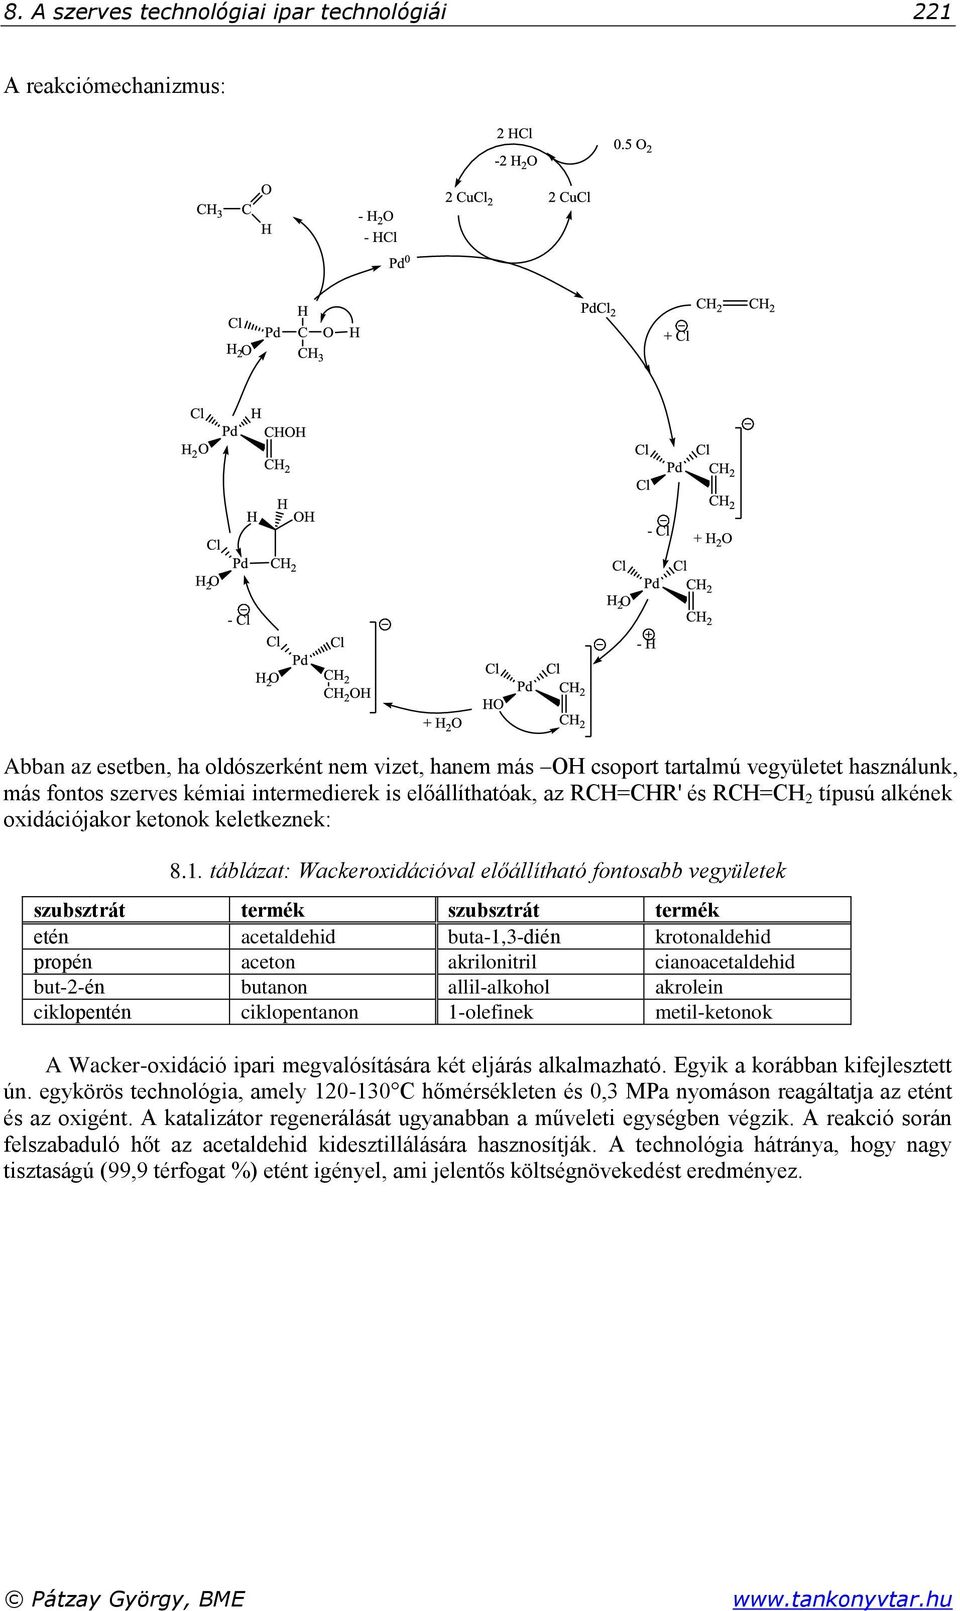 táblázat: Wackeroxidációval előállítható fontosabb vegyületek szubsztrát termék szubsztrát termék etén acetaldehid buta-1,3-dién krotonaldehid propén aceton akrilonitril cianoacetaldehid but-2-én